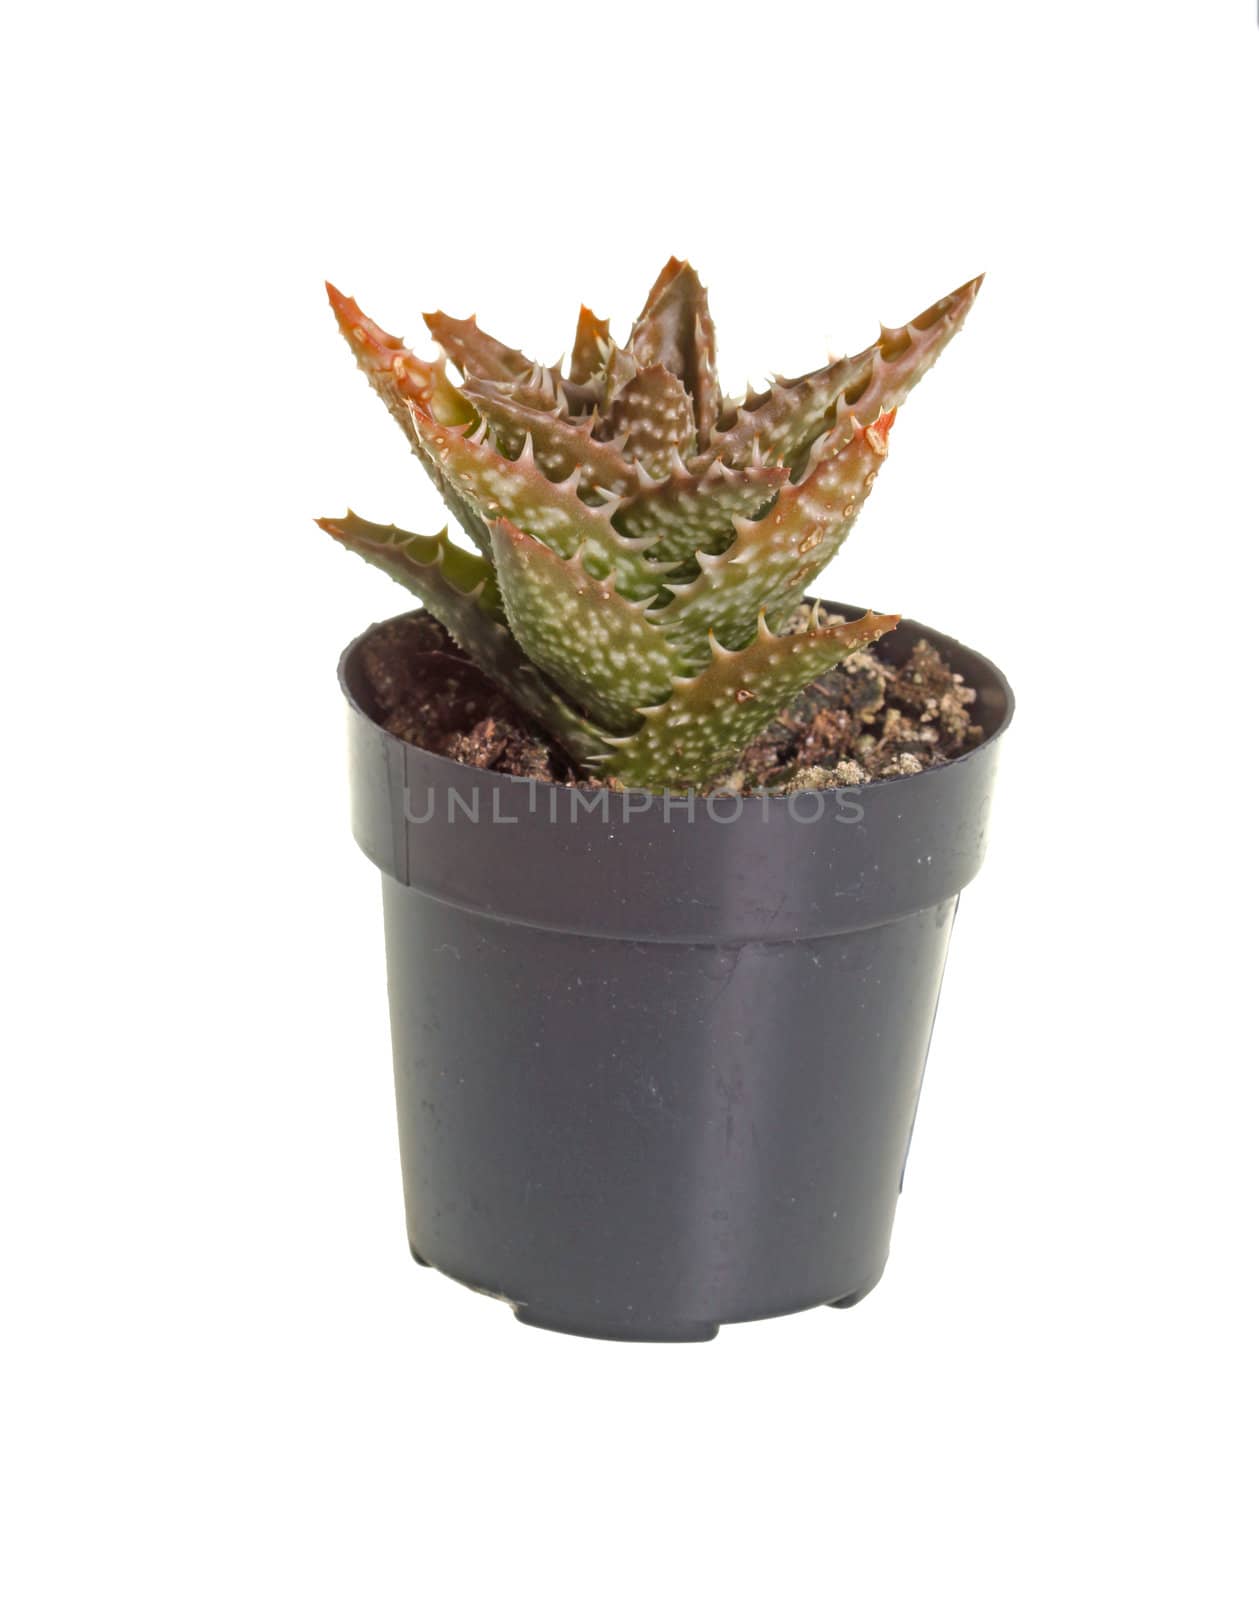 Small plant of the Zanzibar aloe (Aloe zanzibarica) grown in a small plastic pot against a white background